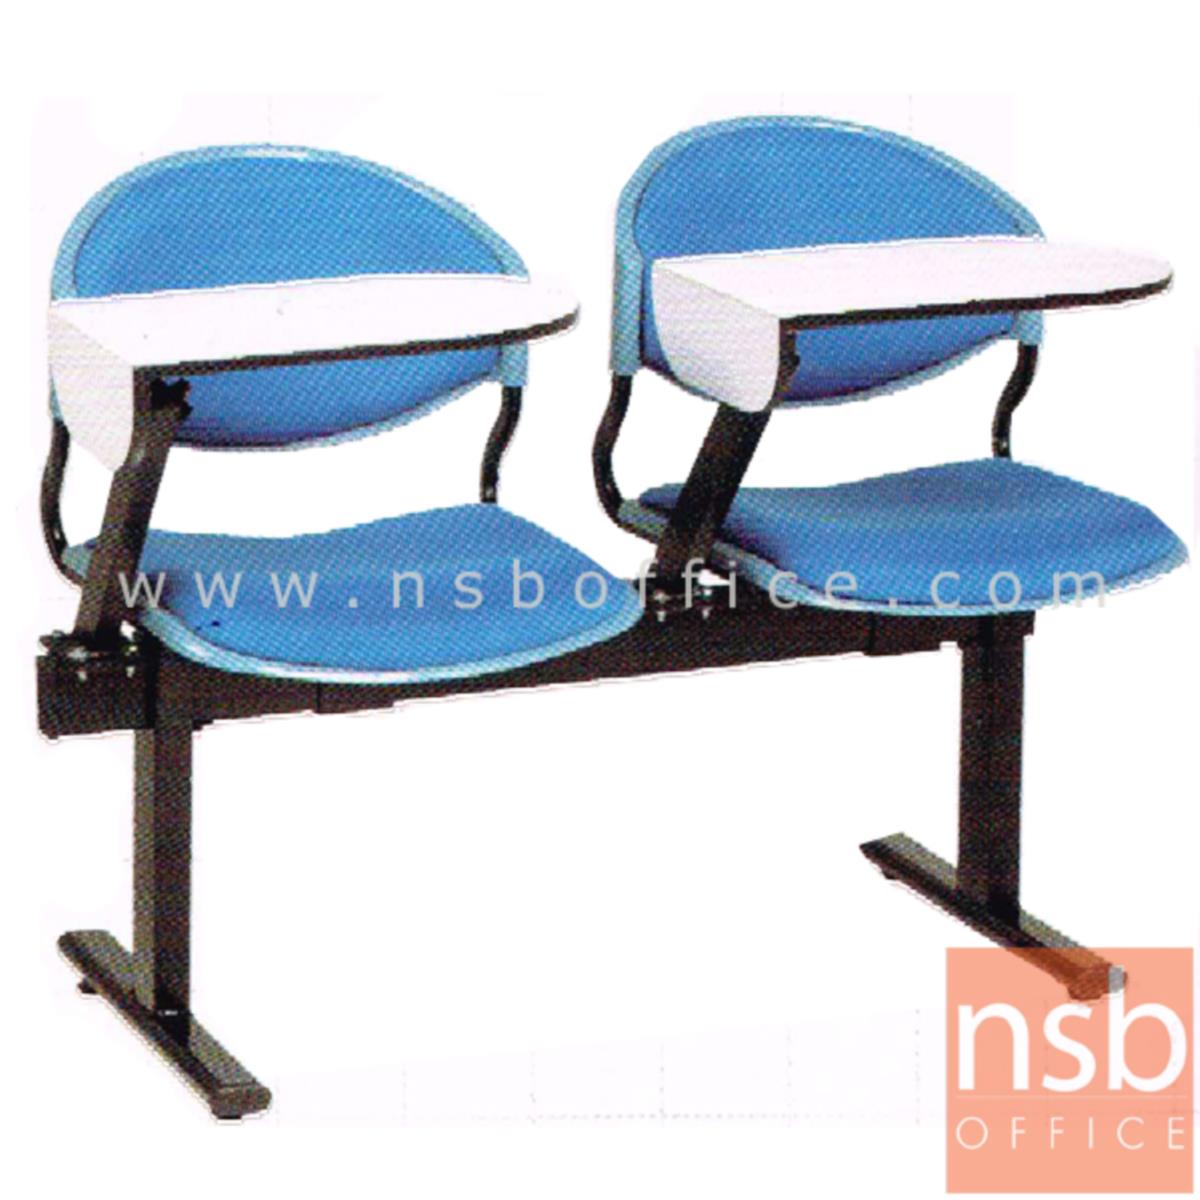 เก้าอี้เลคเชอร์แถวเฟรมโพลี่หุ้มเบาะ รุ่น D190 2 ,3 และ 4 ที่นั่ง ขาเหล็กเหลี่ยมพ่นสี 